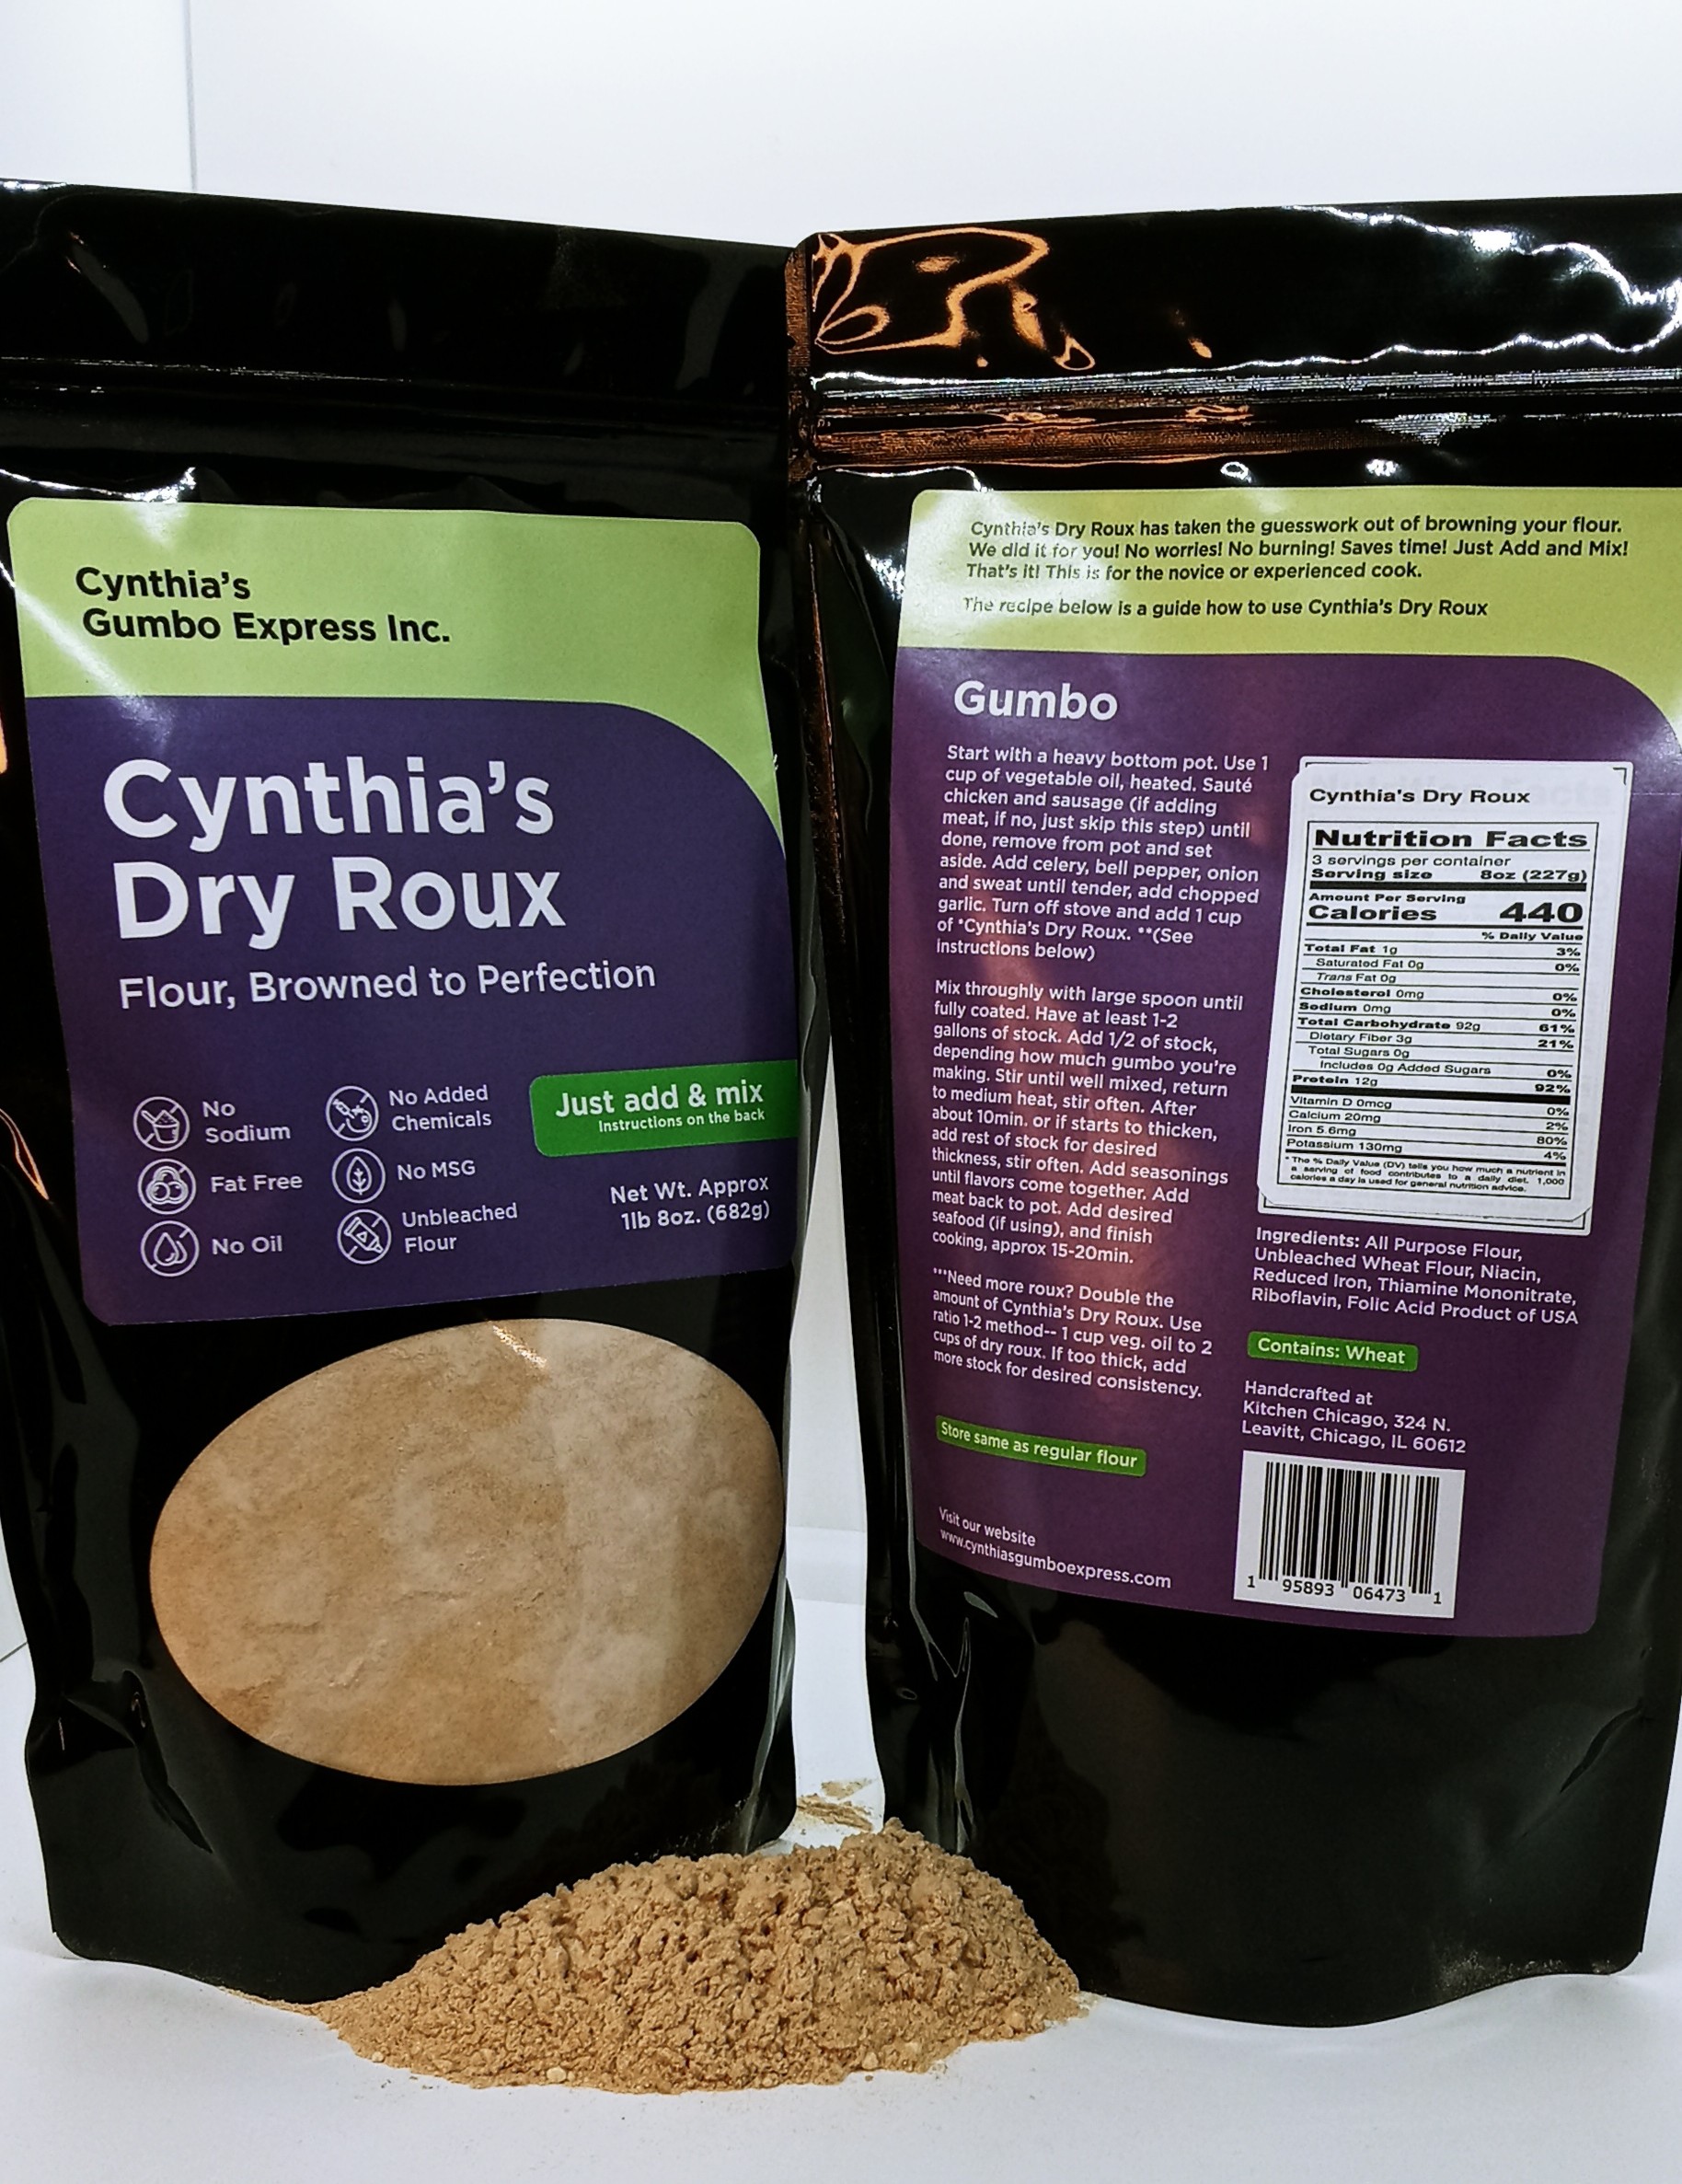 Cynthia's Dry Roux